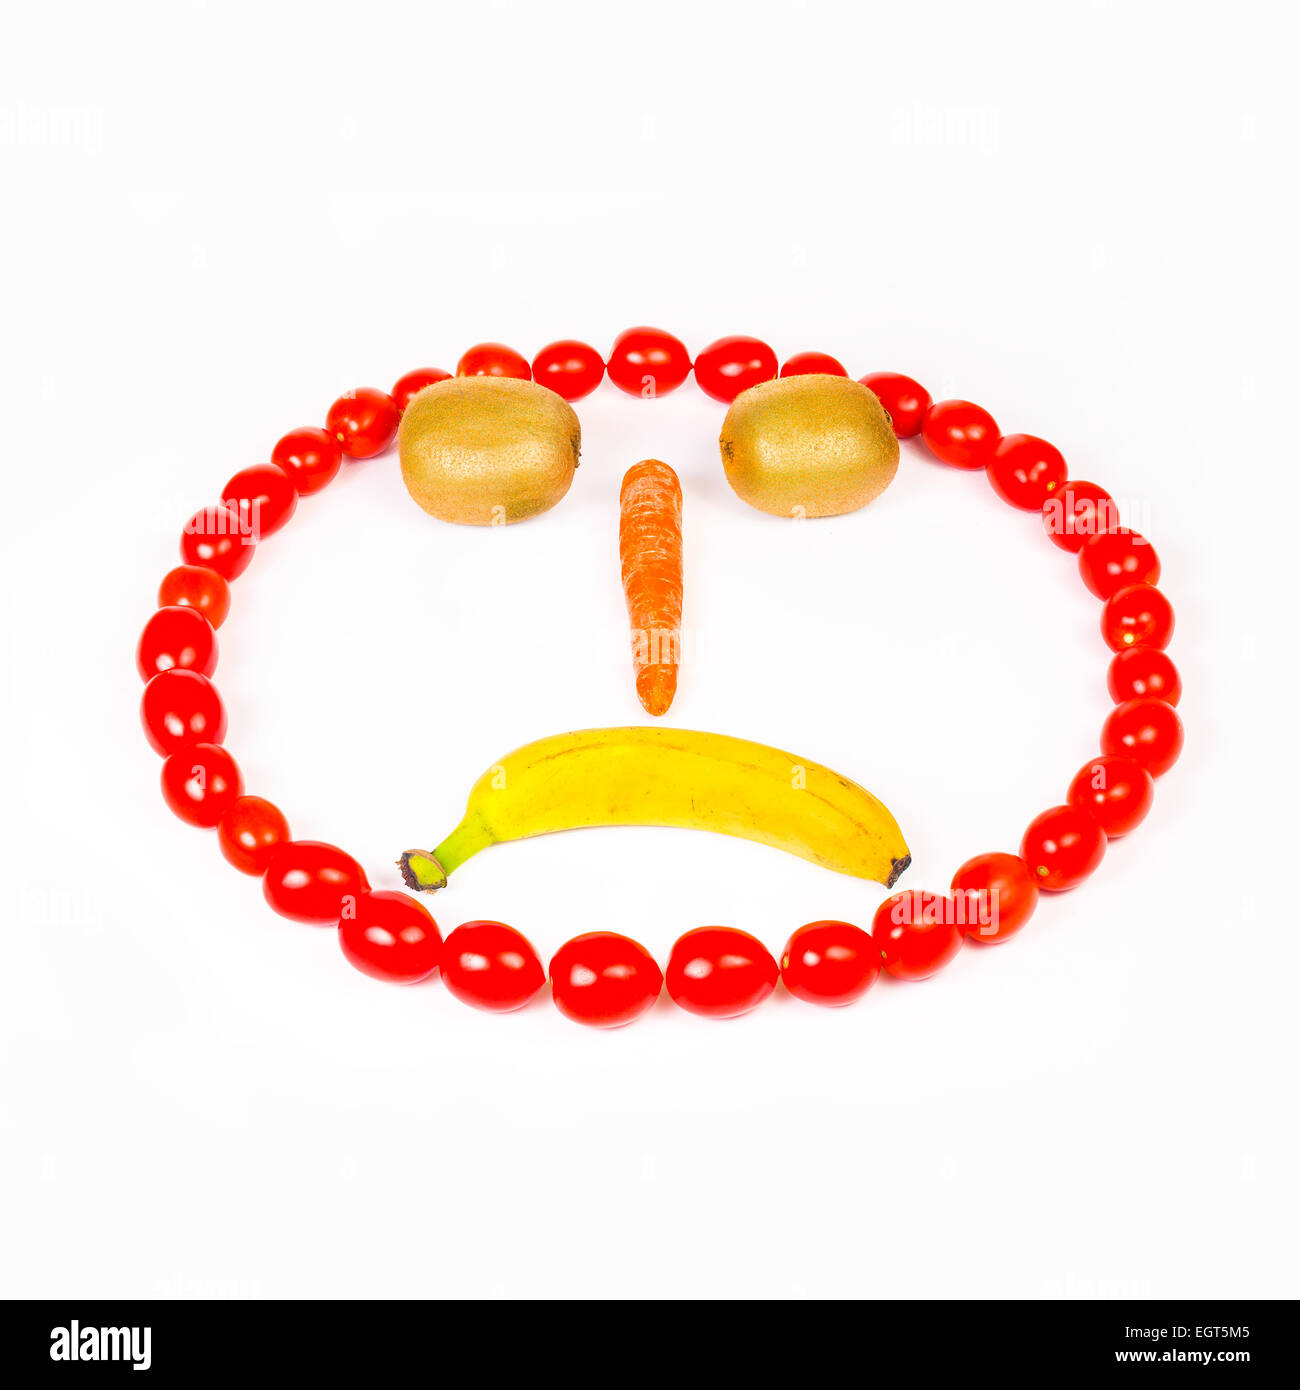 Dieser traurige Smiley ist Wirh Karotte, Kiwi, Cherry-Tomaten und Bananen gemacht. Stockfoto